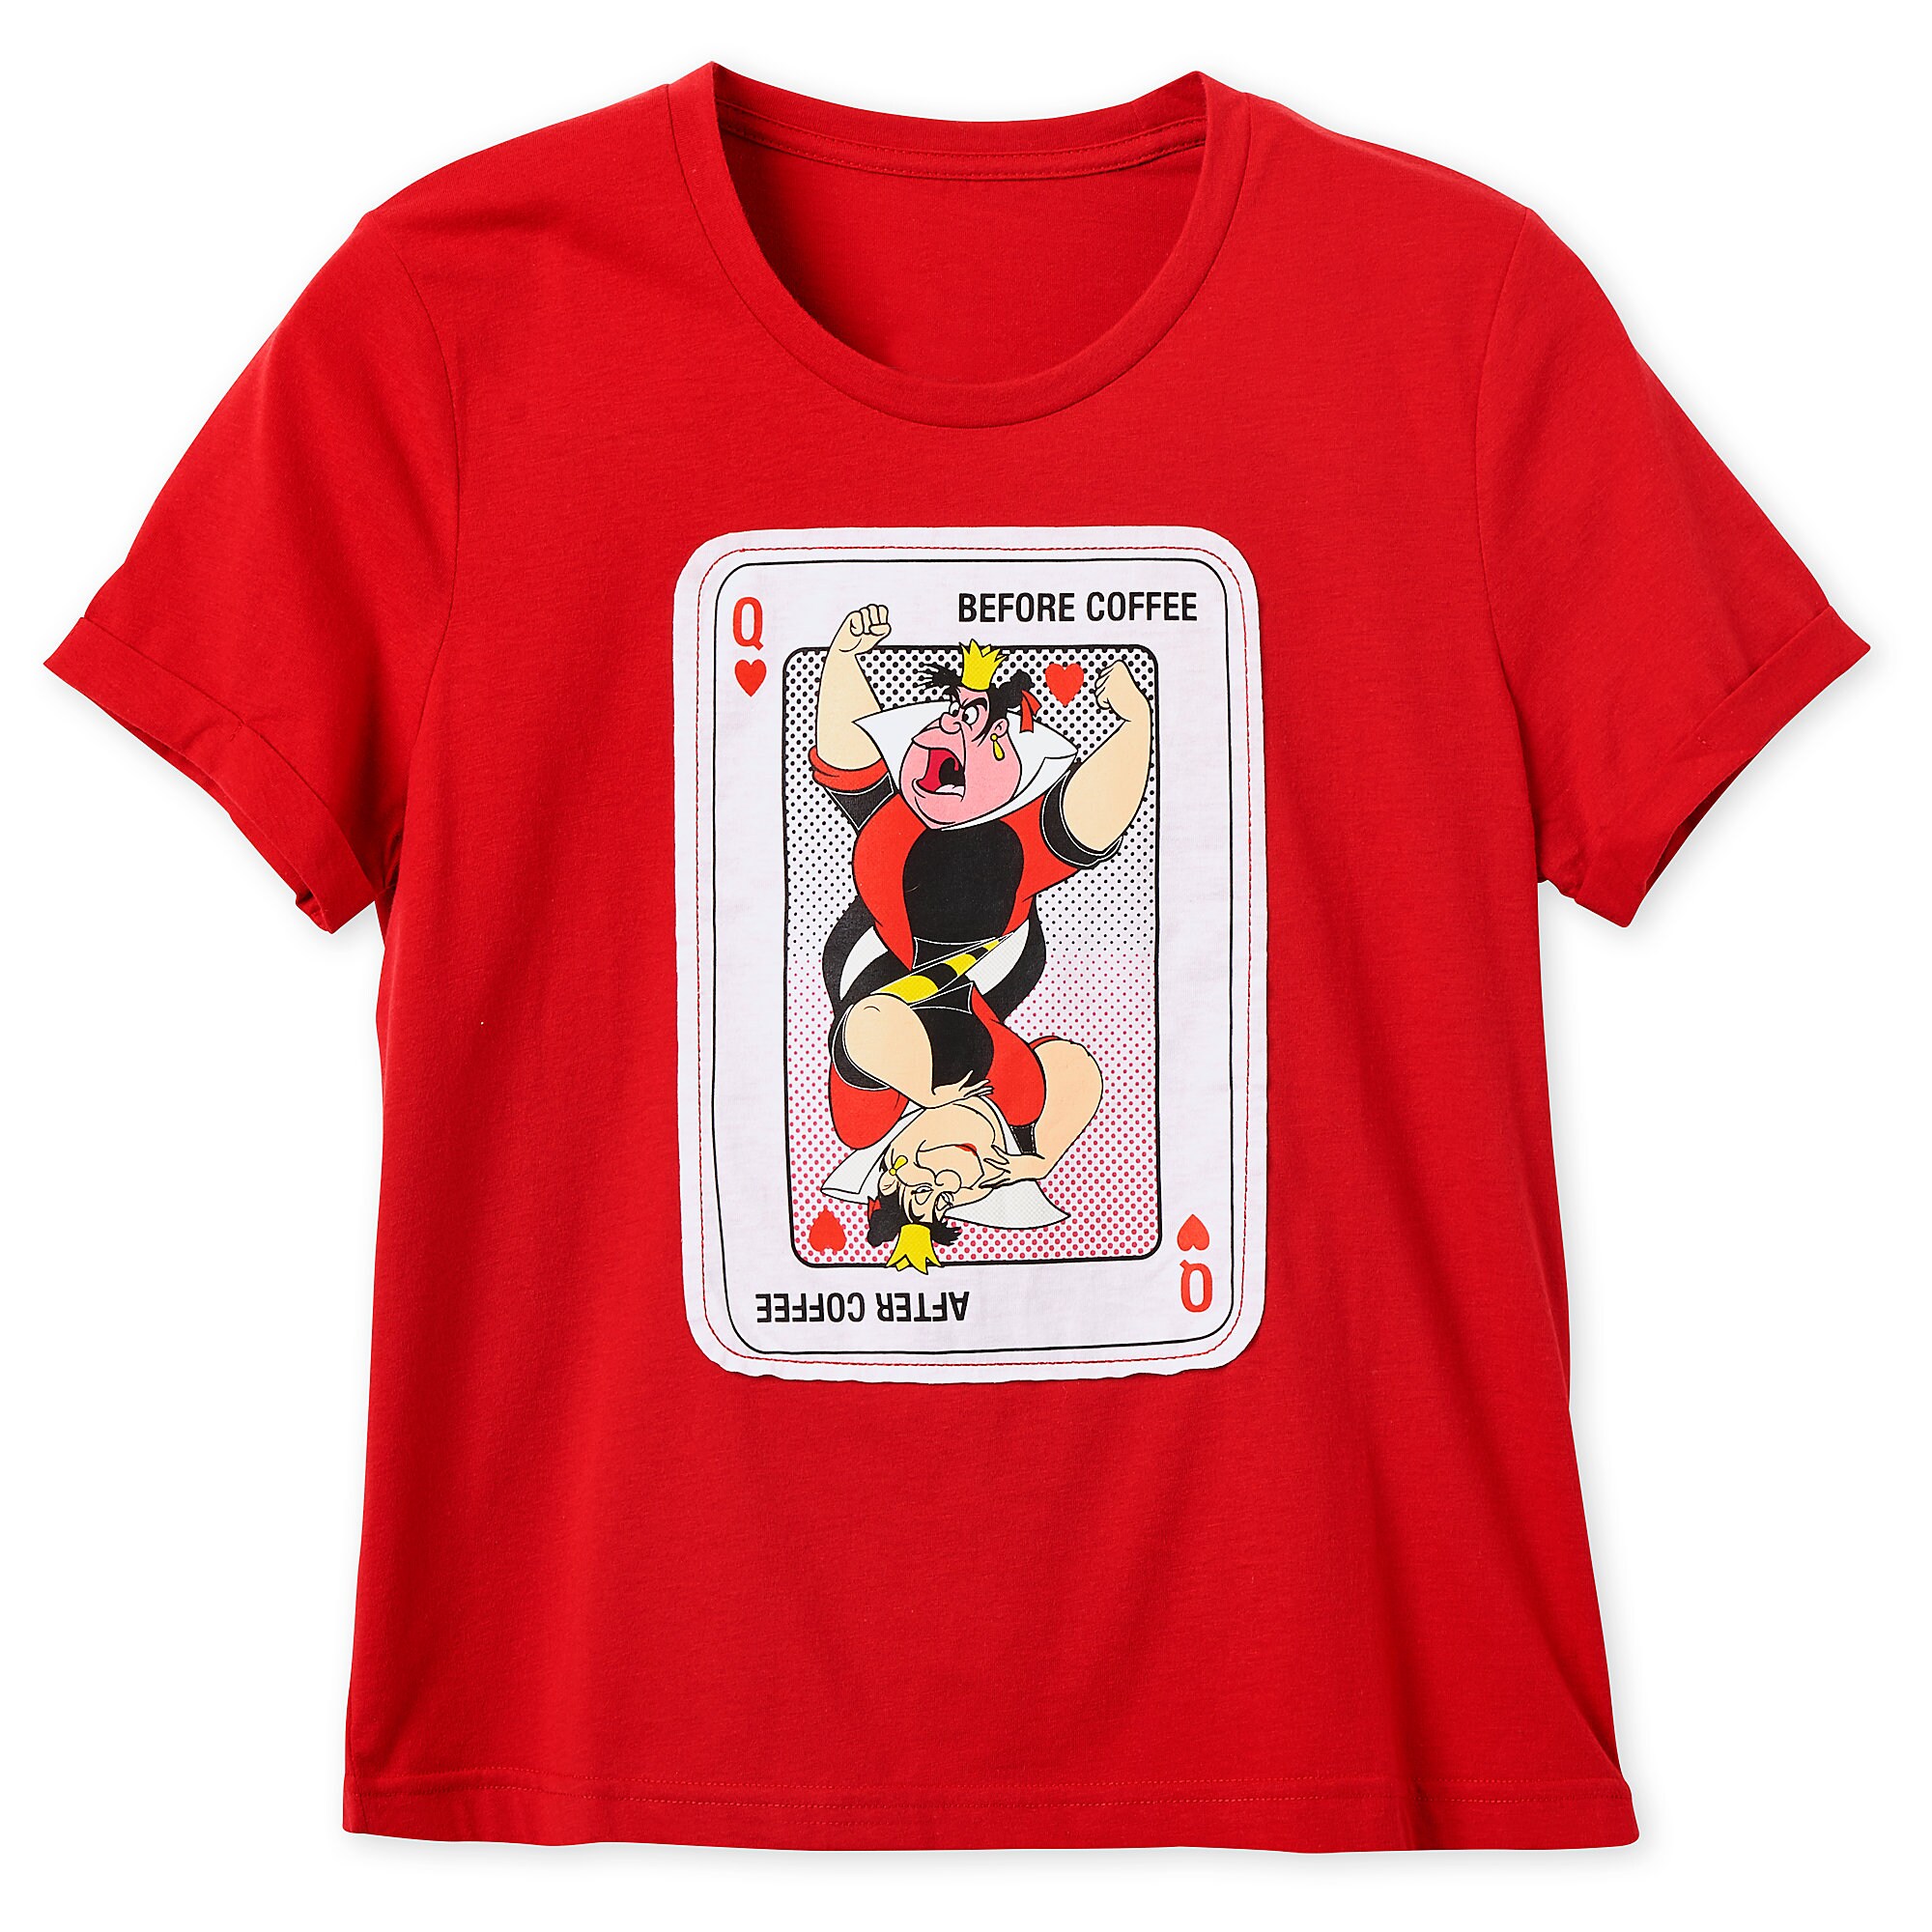 Queen of Hearts T-Shirt for Women - Alice in Wonderland